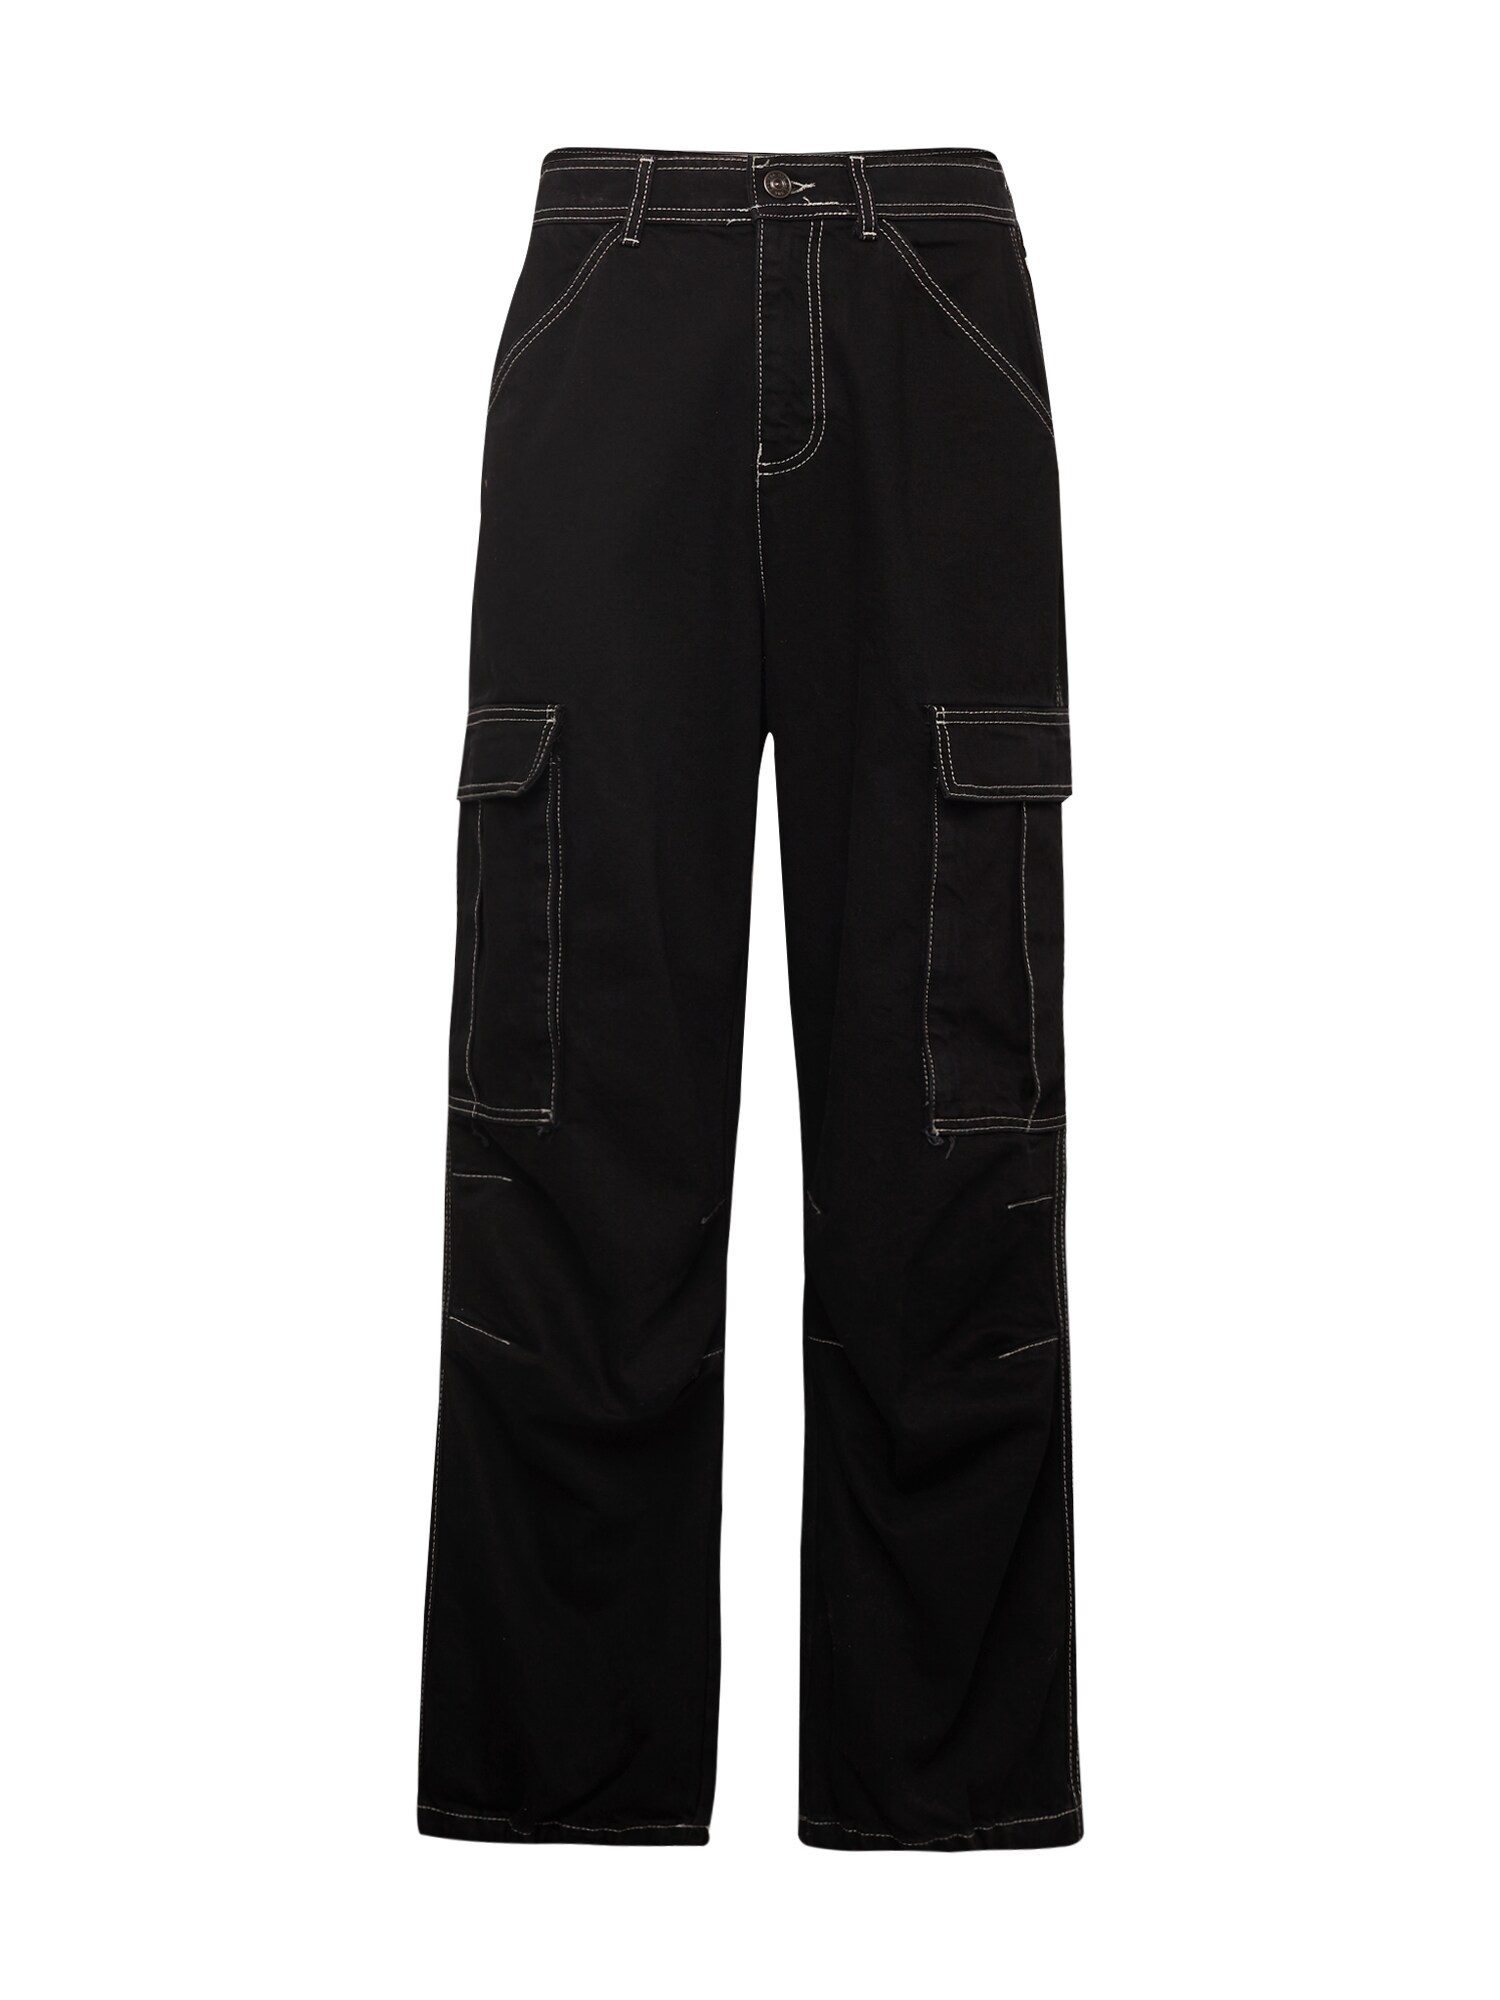 BDG Urban Outfitters Darbinio stiliaus džinsai juoda / balta